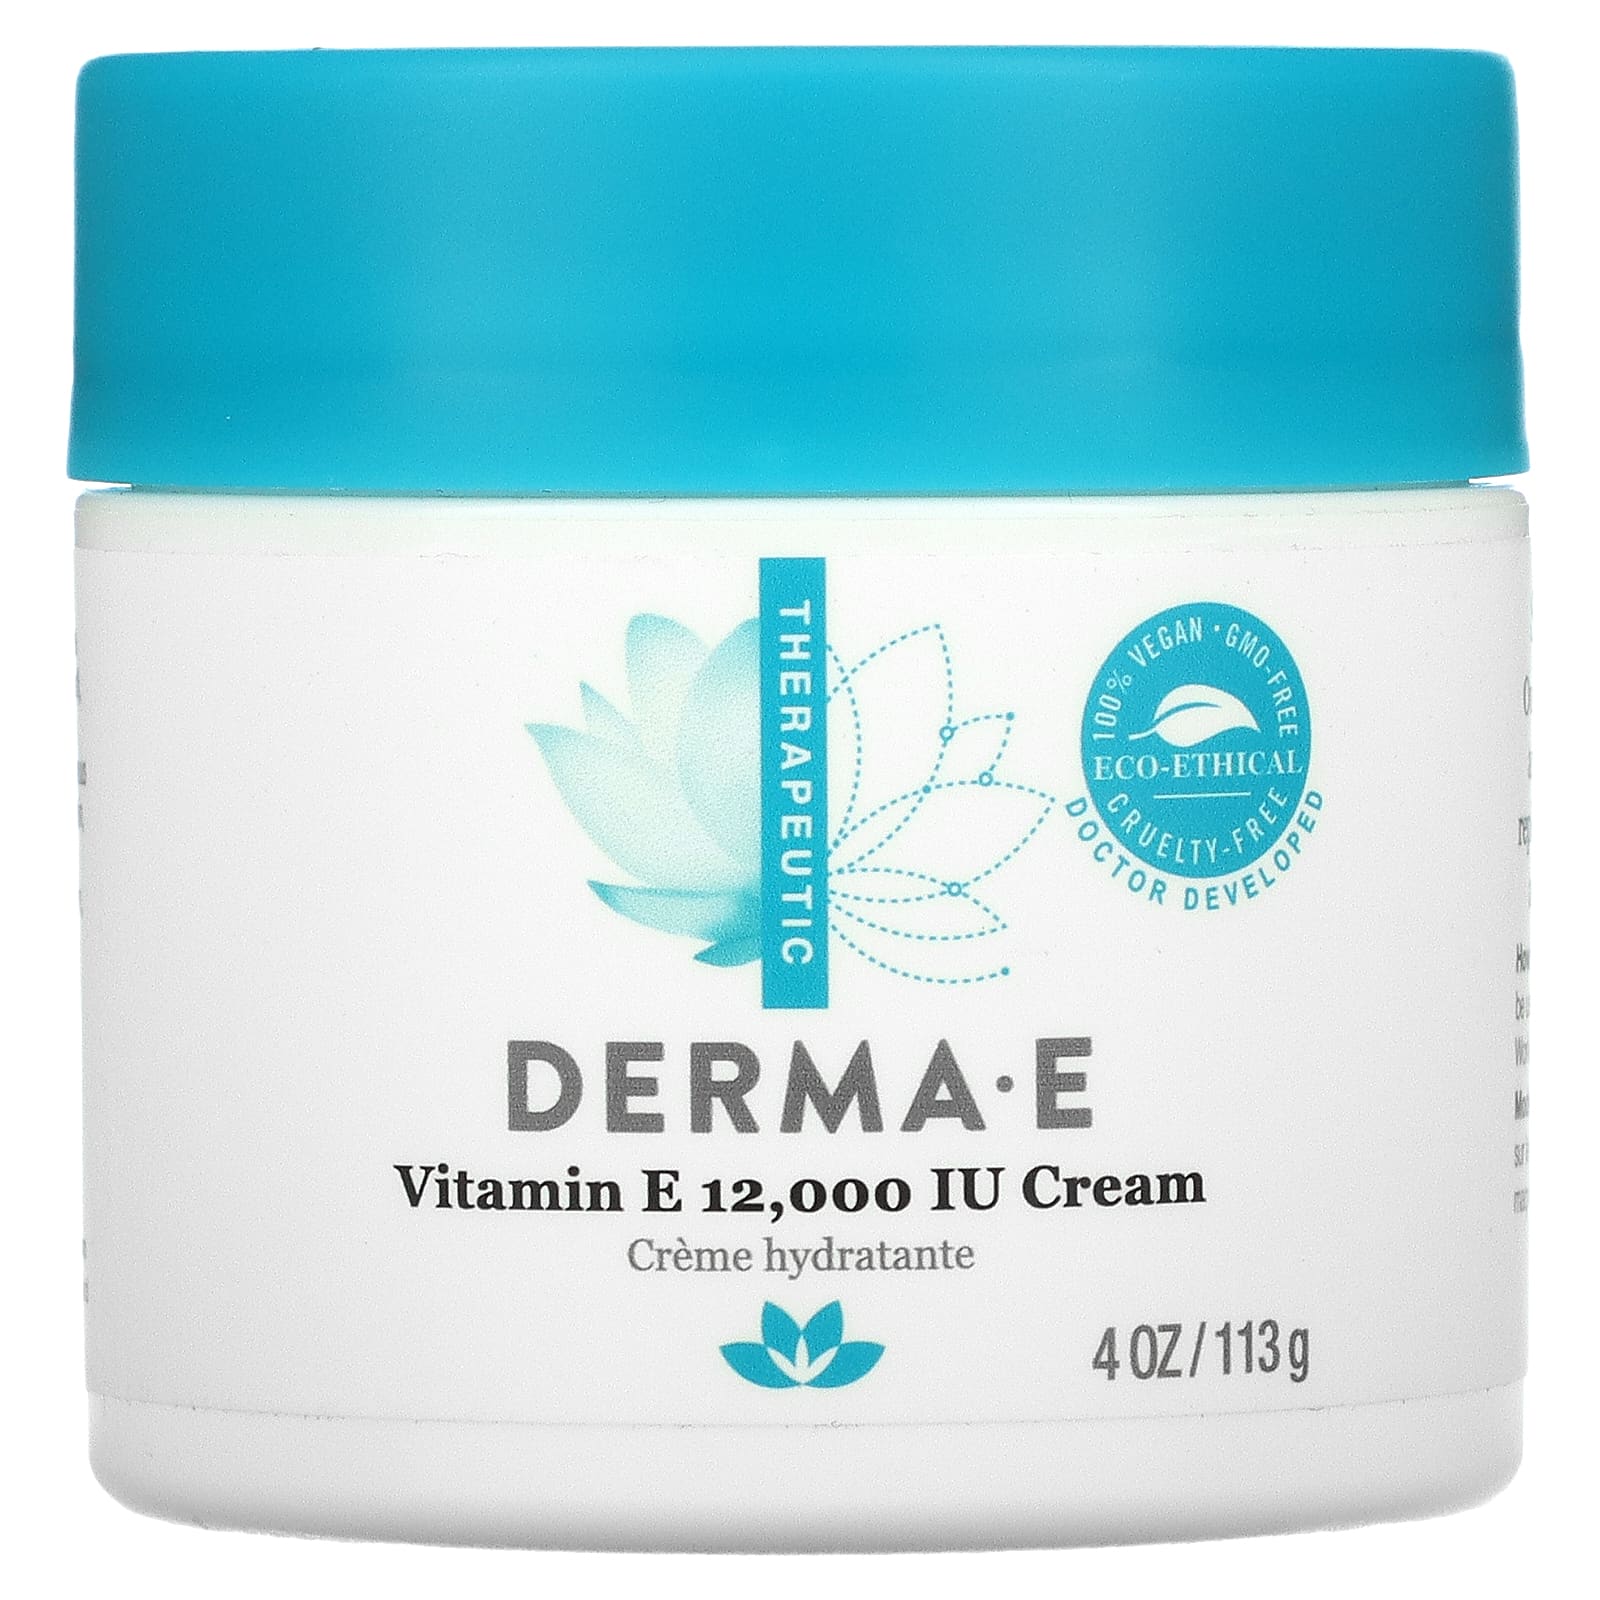 Derma E Крем с содержанием витамина E 12000 МЕ 4 oz (113 г) крем от экземы derma e 113 г